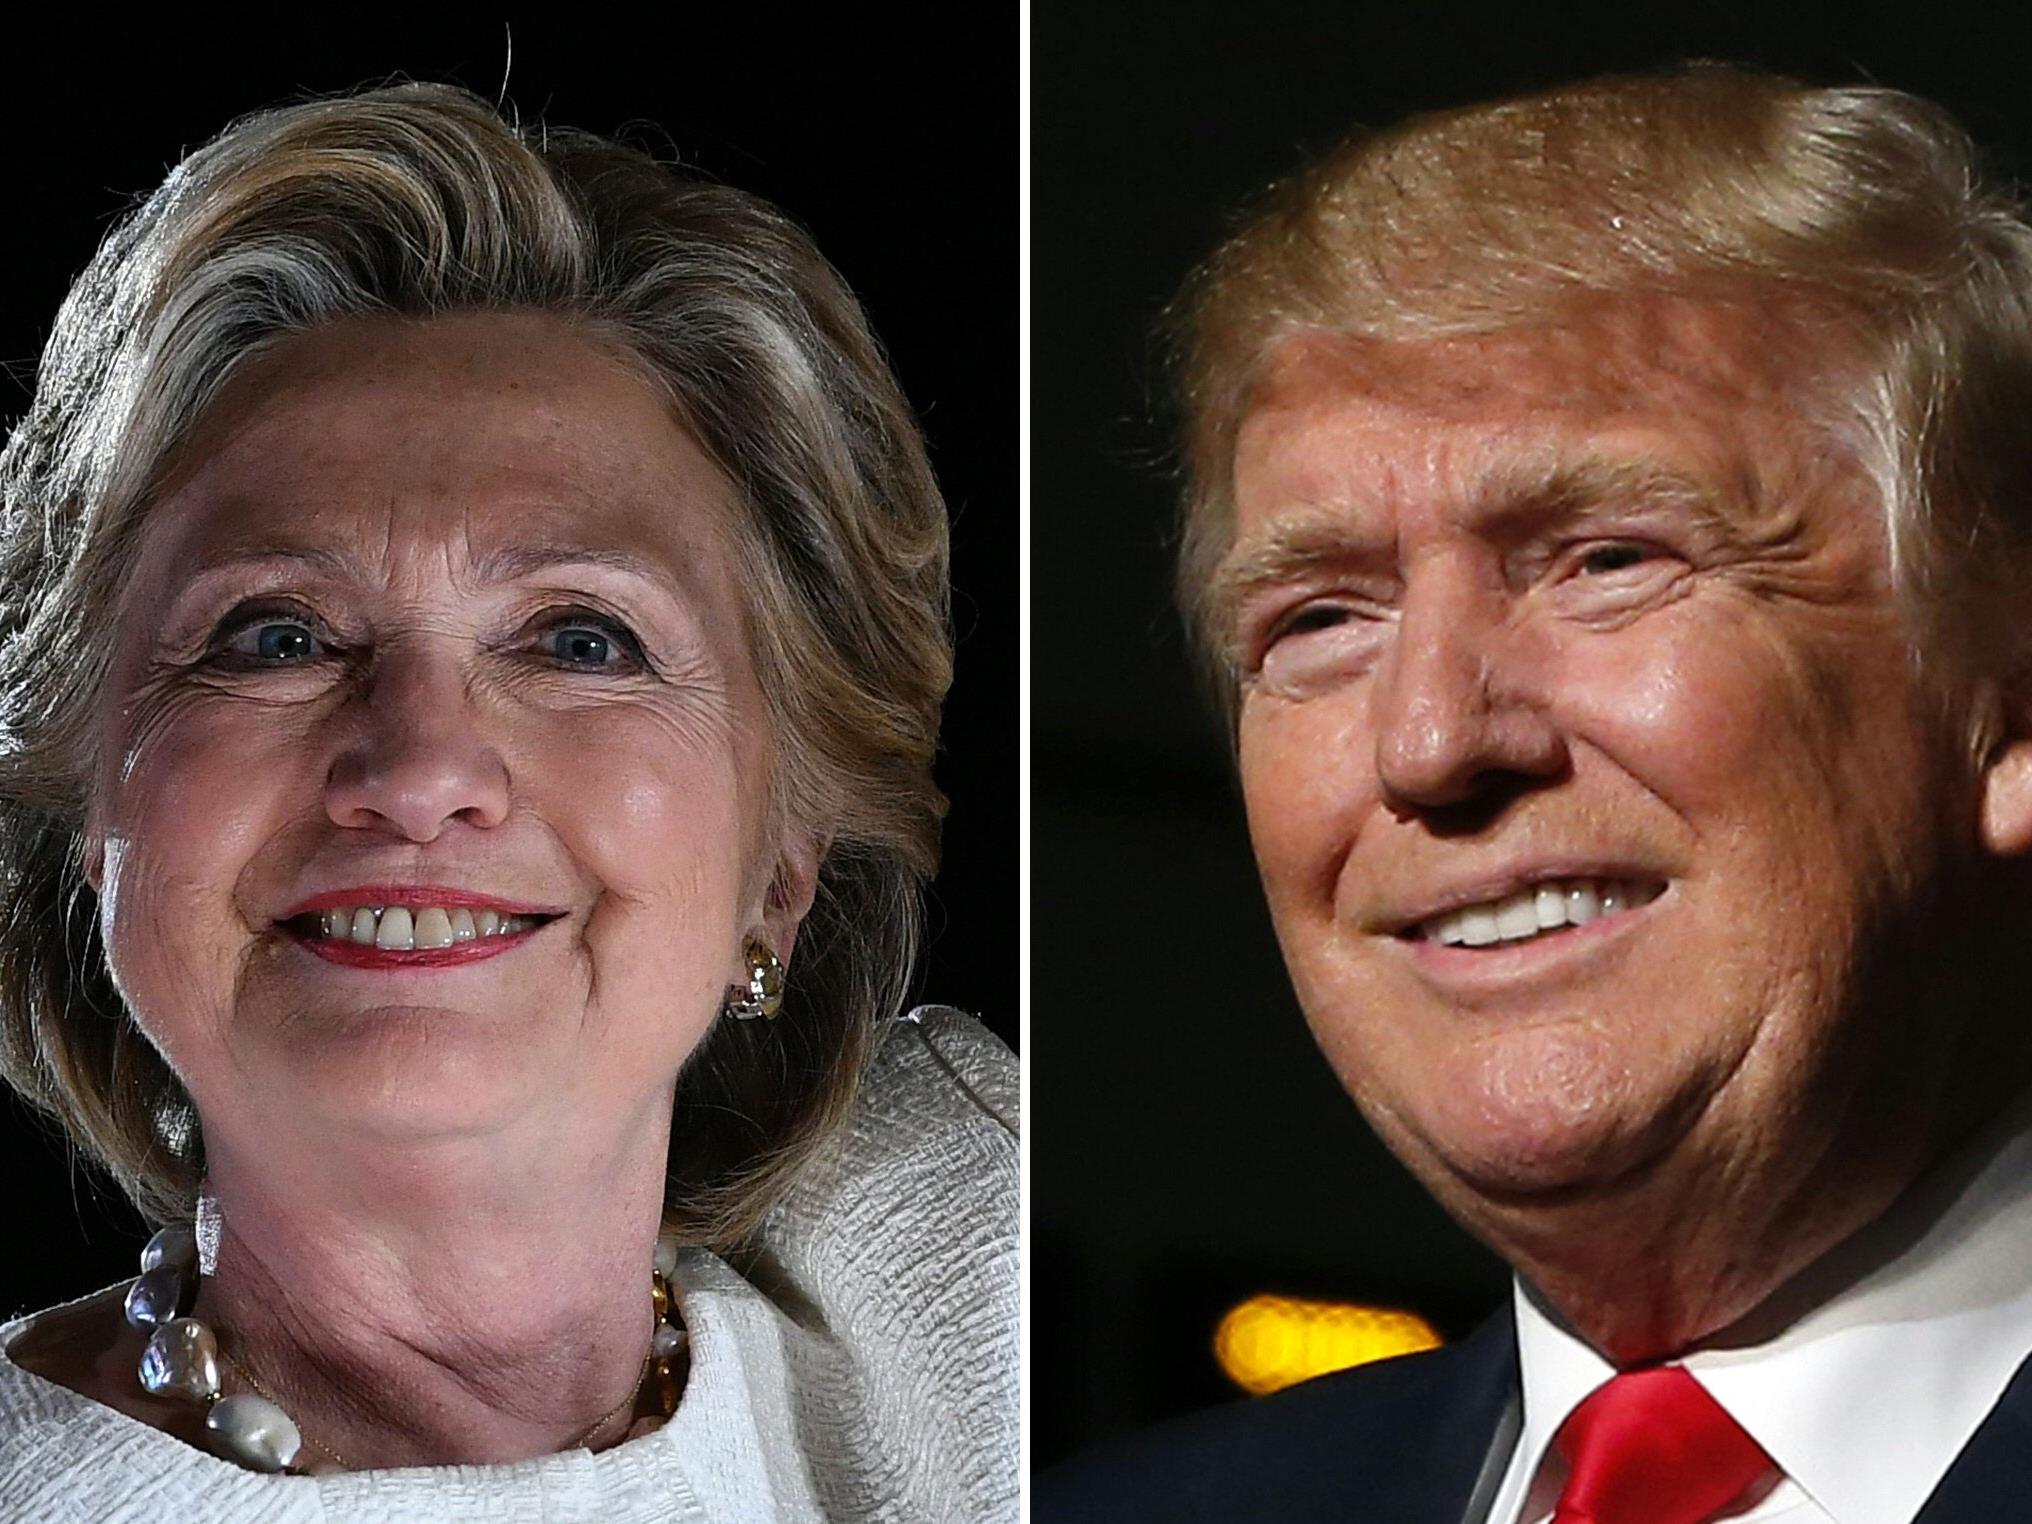 Hilary Clinton oder Donald Trump? Wir berichten live von der US-Präsidentschaftswahl im Ticker.